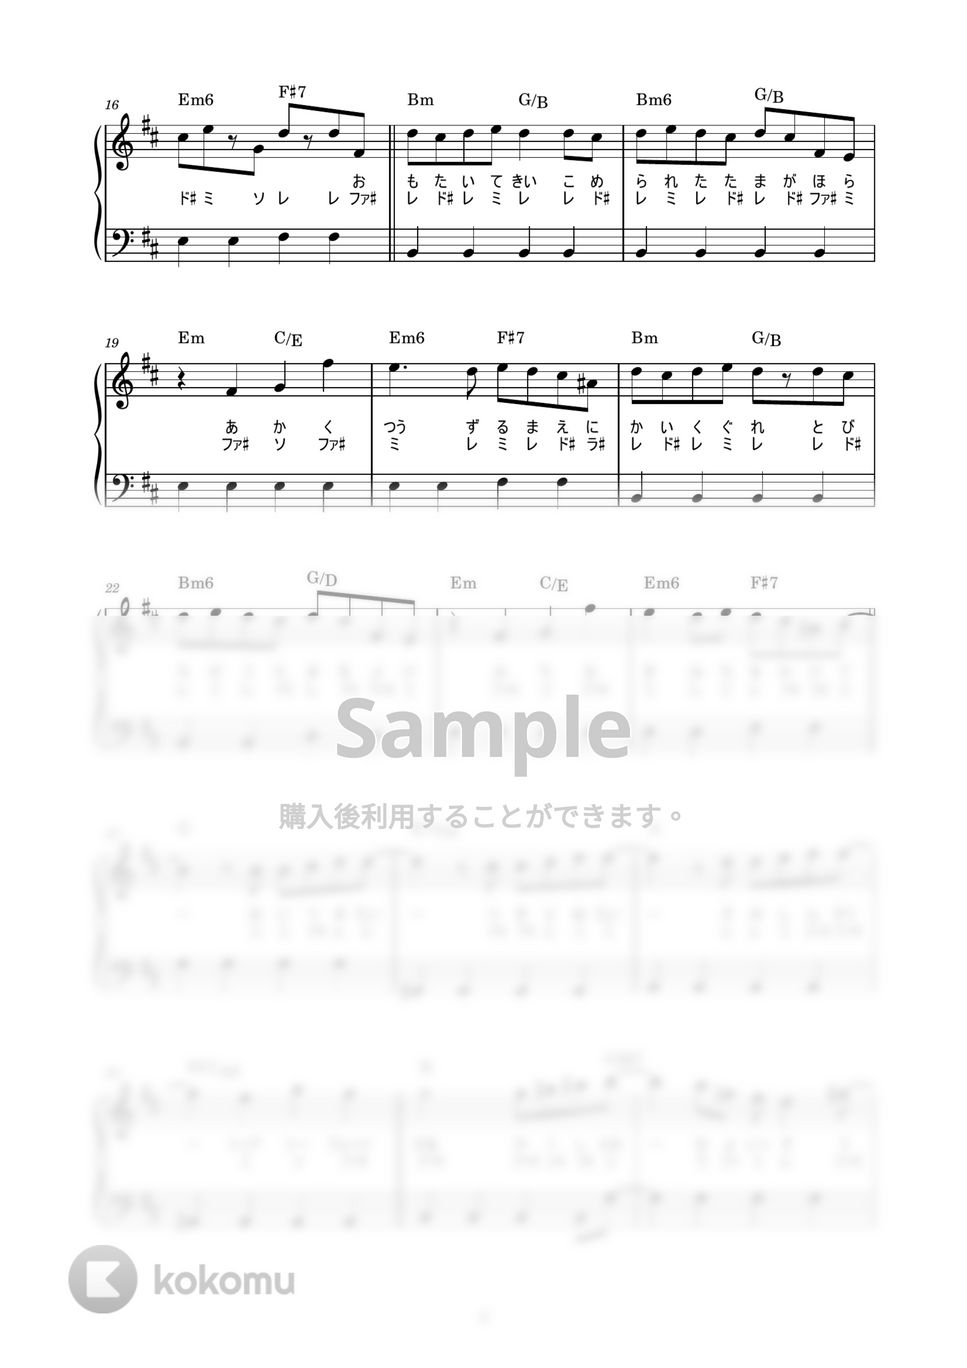 東京事変 - 永遠の不在証明 (かんたん / 歌詞付き / ドレミ付き / 初心者) by piano.tokyo